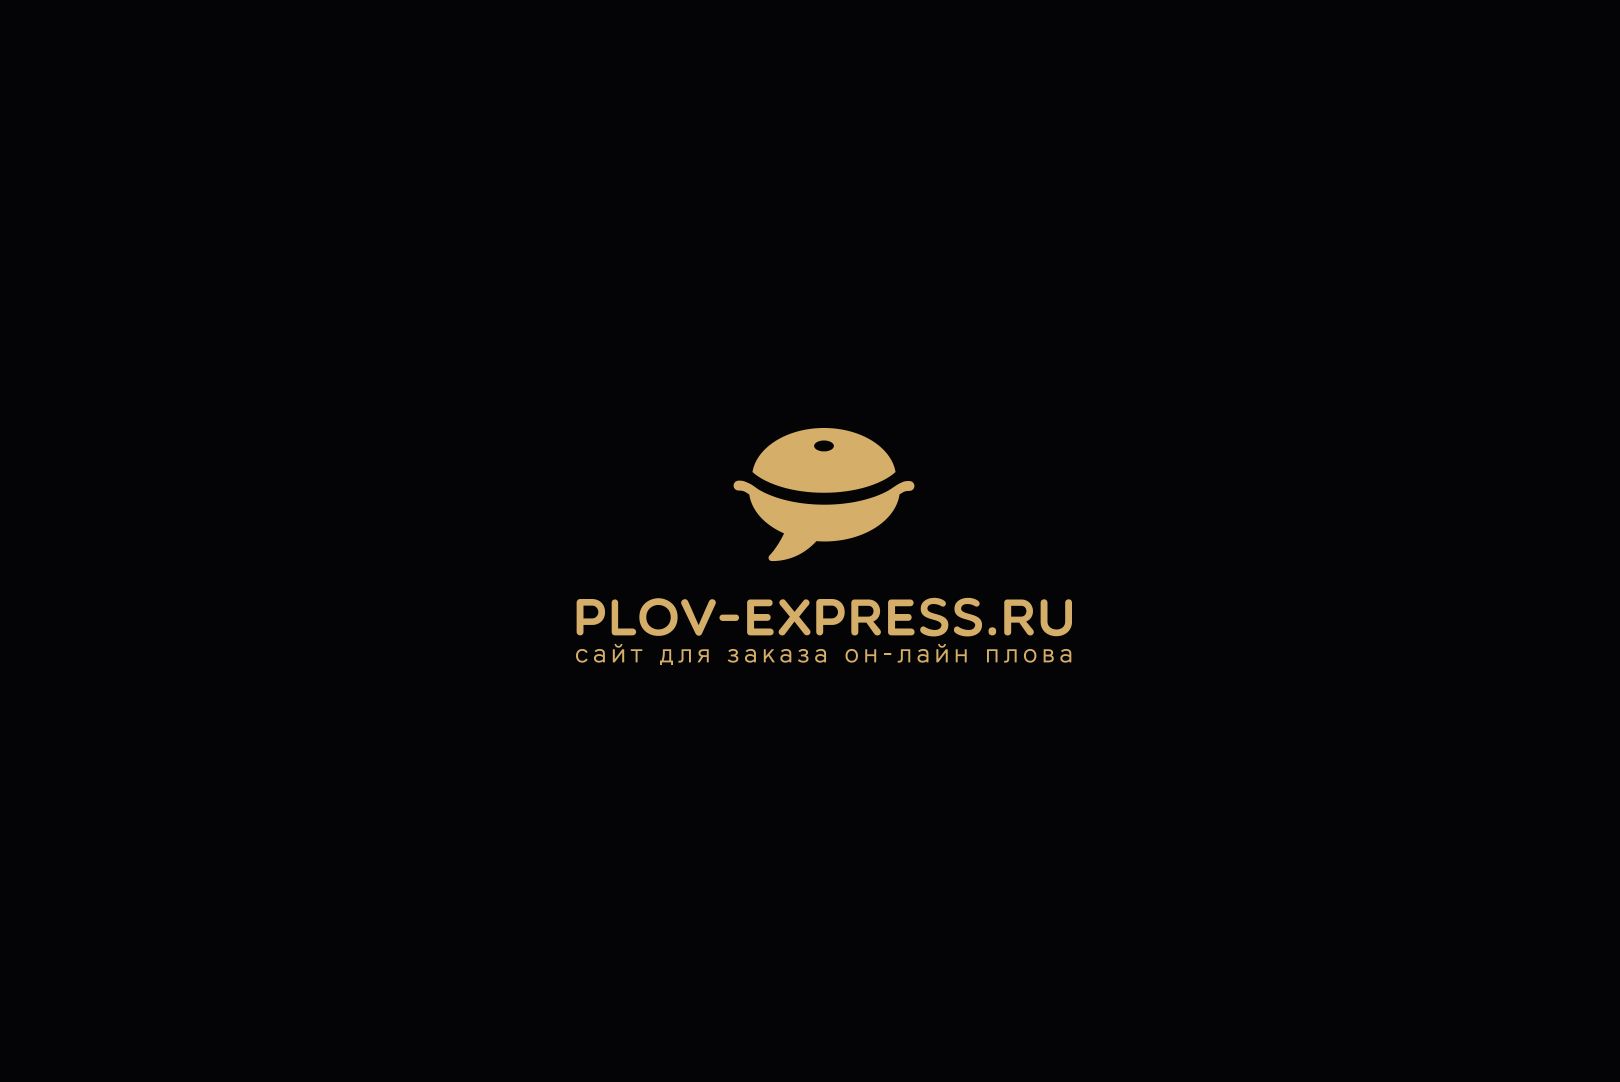 Лого и фирмстиль для сайта plov-express.ru - дизайнер U4po4mak